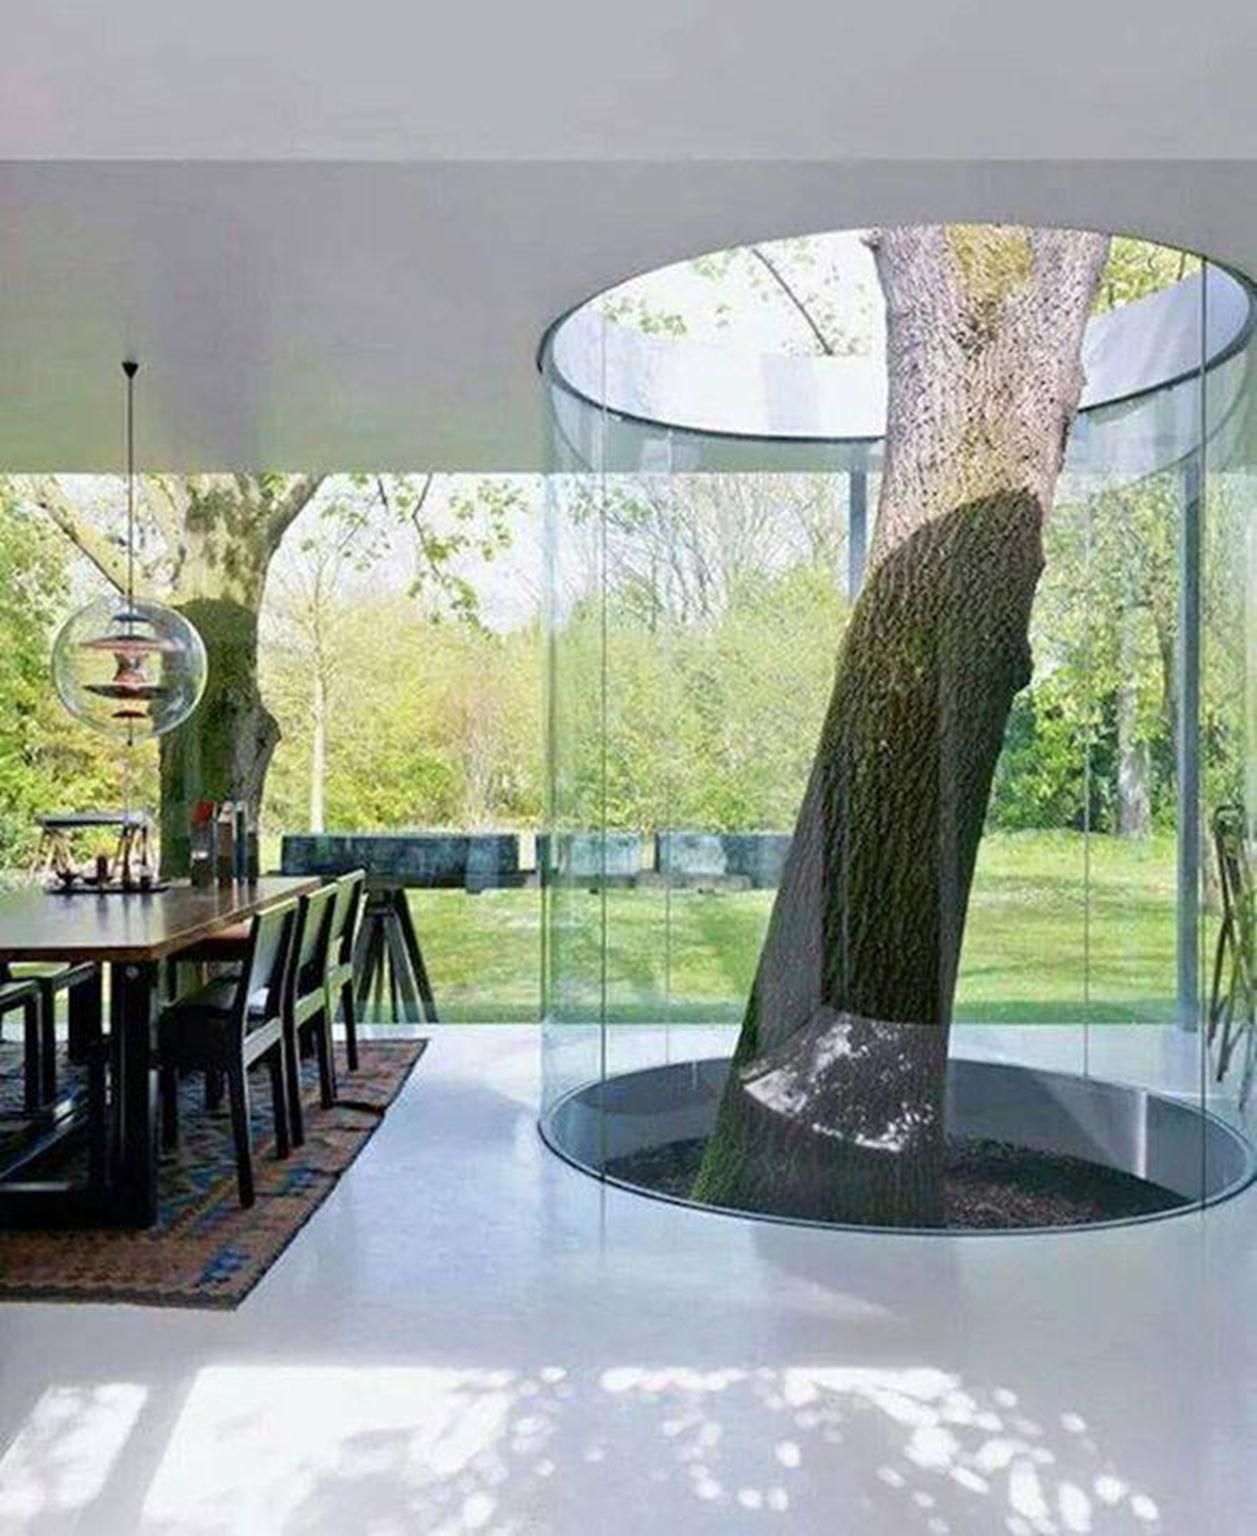 Một cái cây giữa nhà, tạo điểm nhấn cho không gian (Ảnh: Internet)